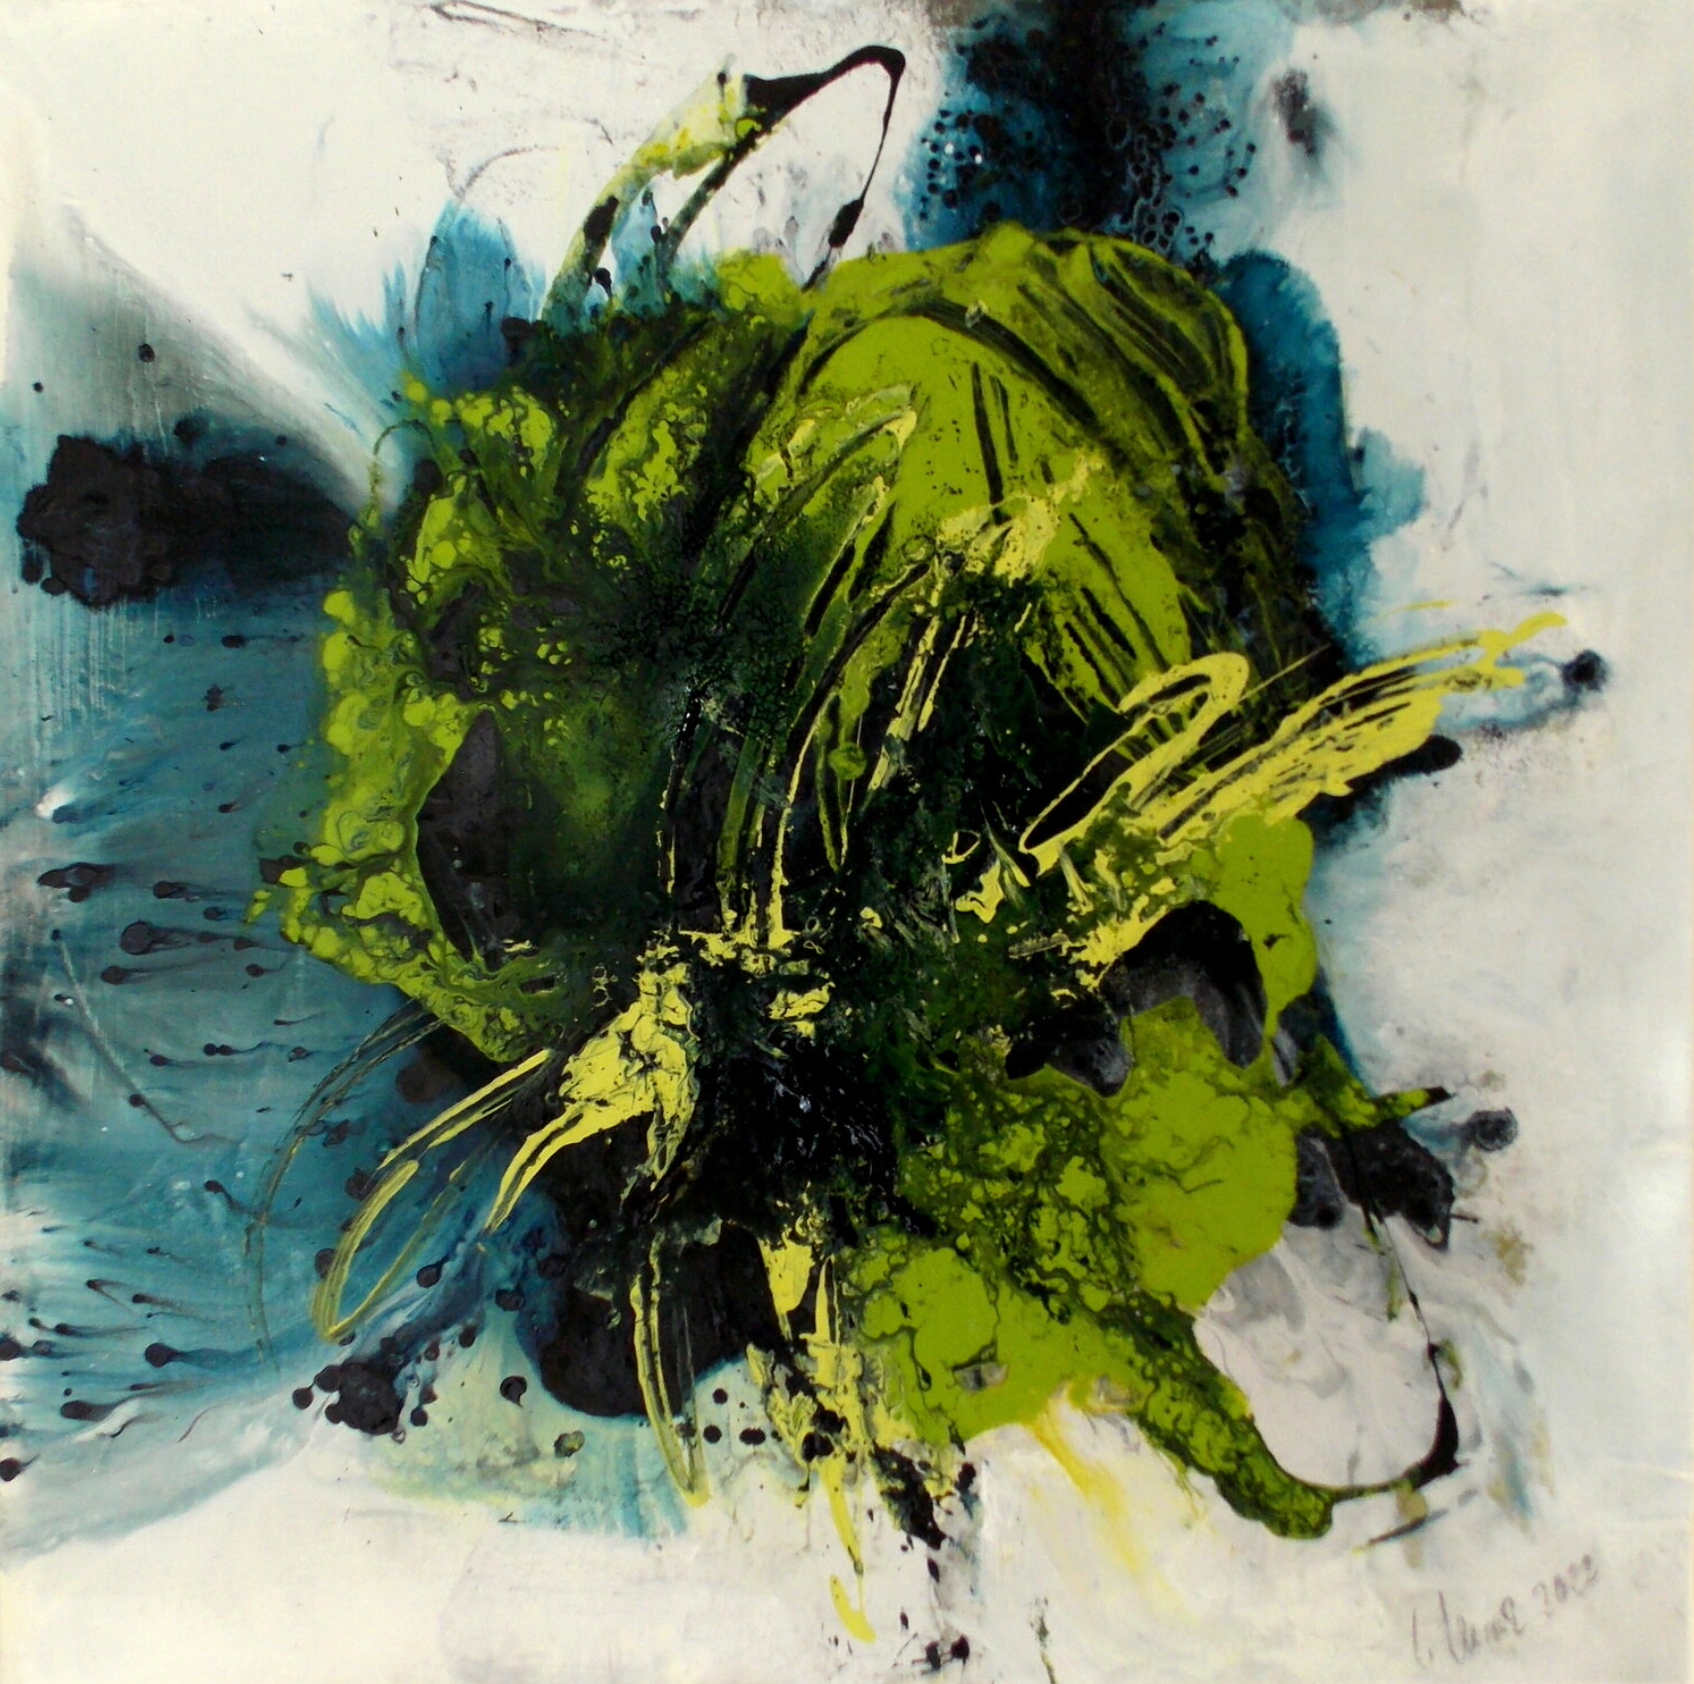 En la pintura expresionista, abstracta y colorista "Clearing 3" de Christa Haack dominan los colores amarillo, verde y azul.